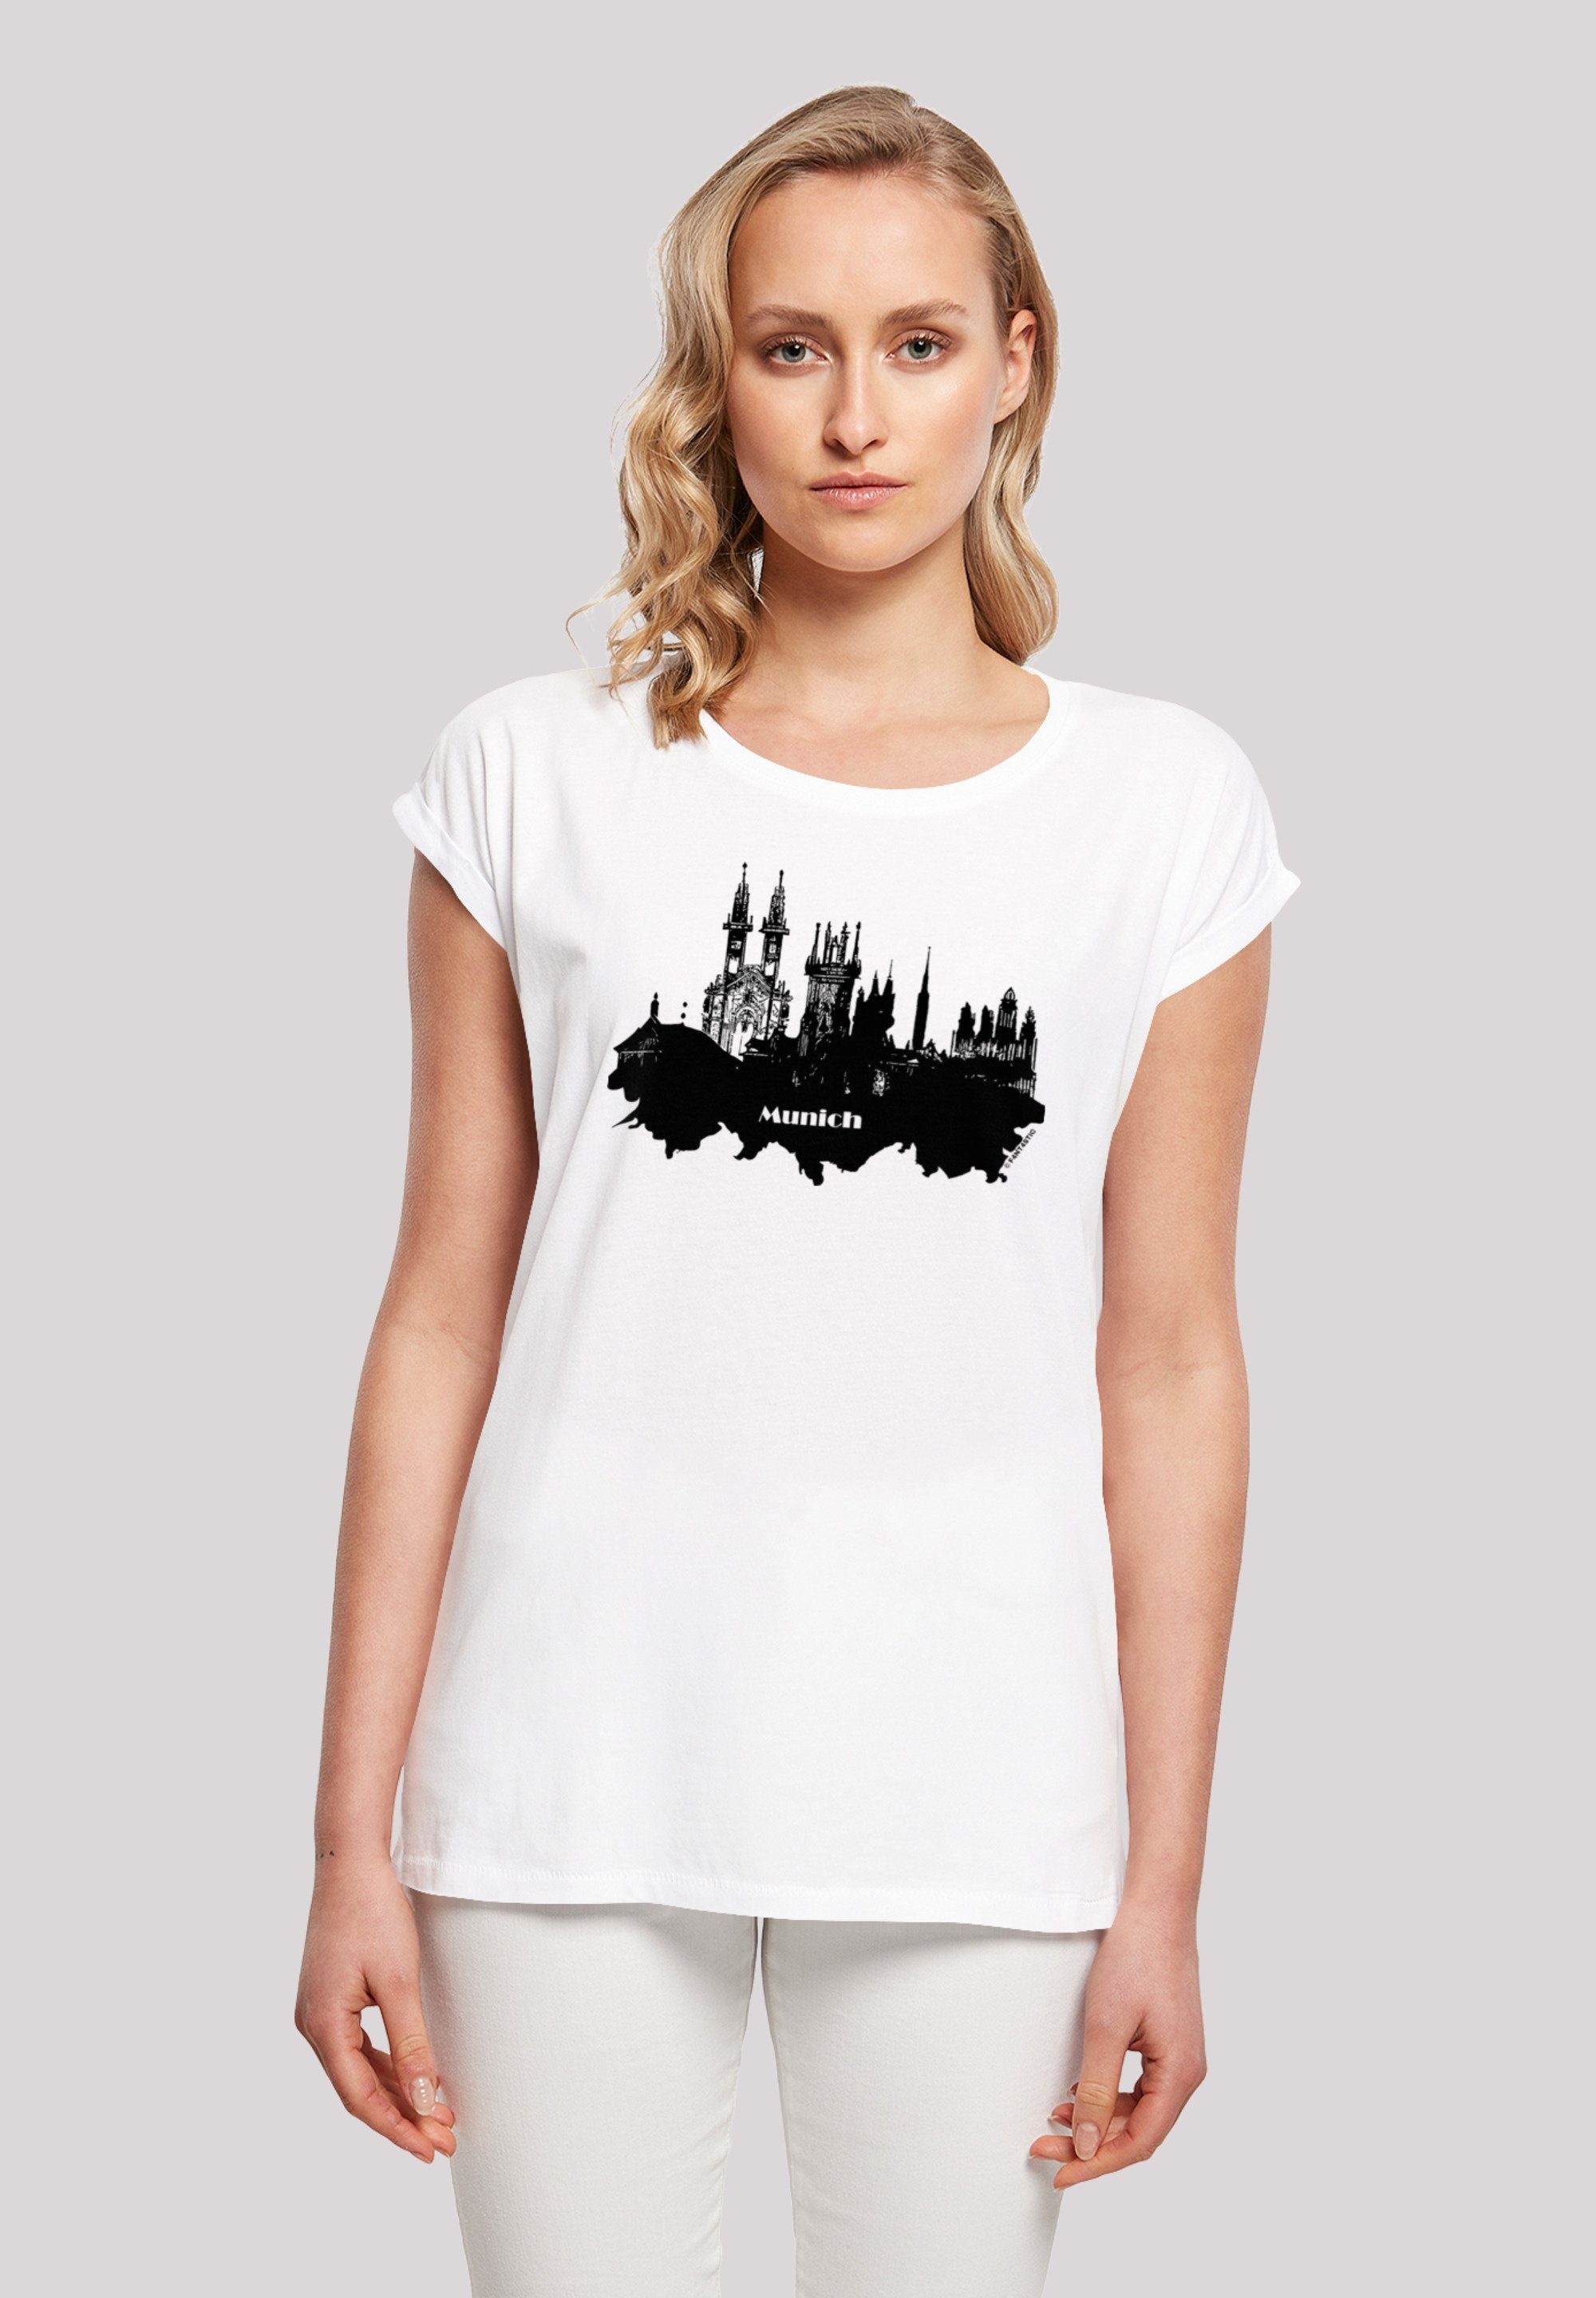 Größe trägt Cities Model T-Shirt skyline Collection F4NT4STIC und groß Print, cm - ist 170 M Munich Das